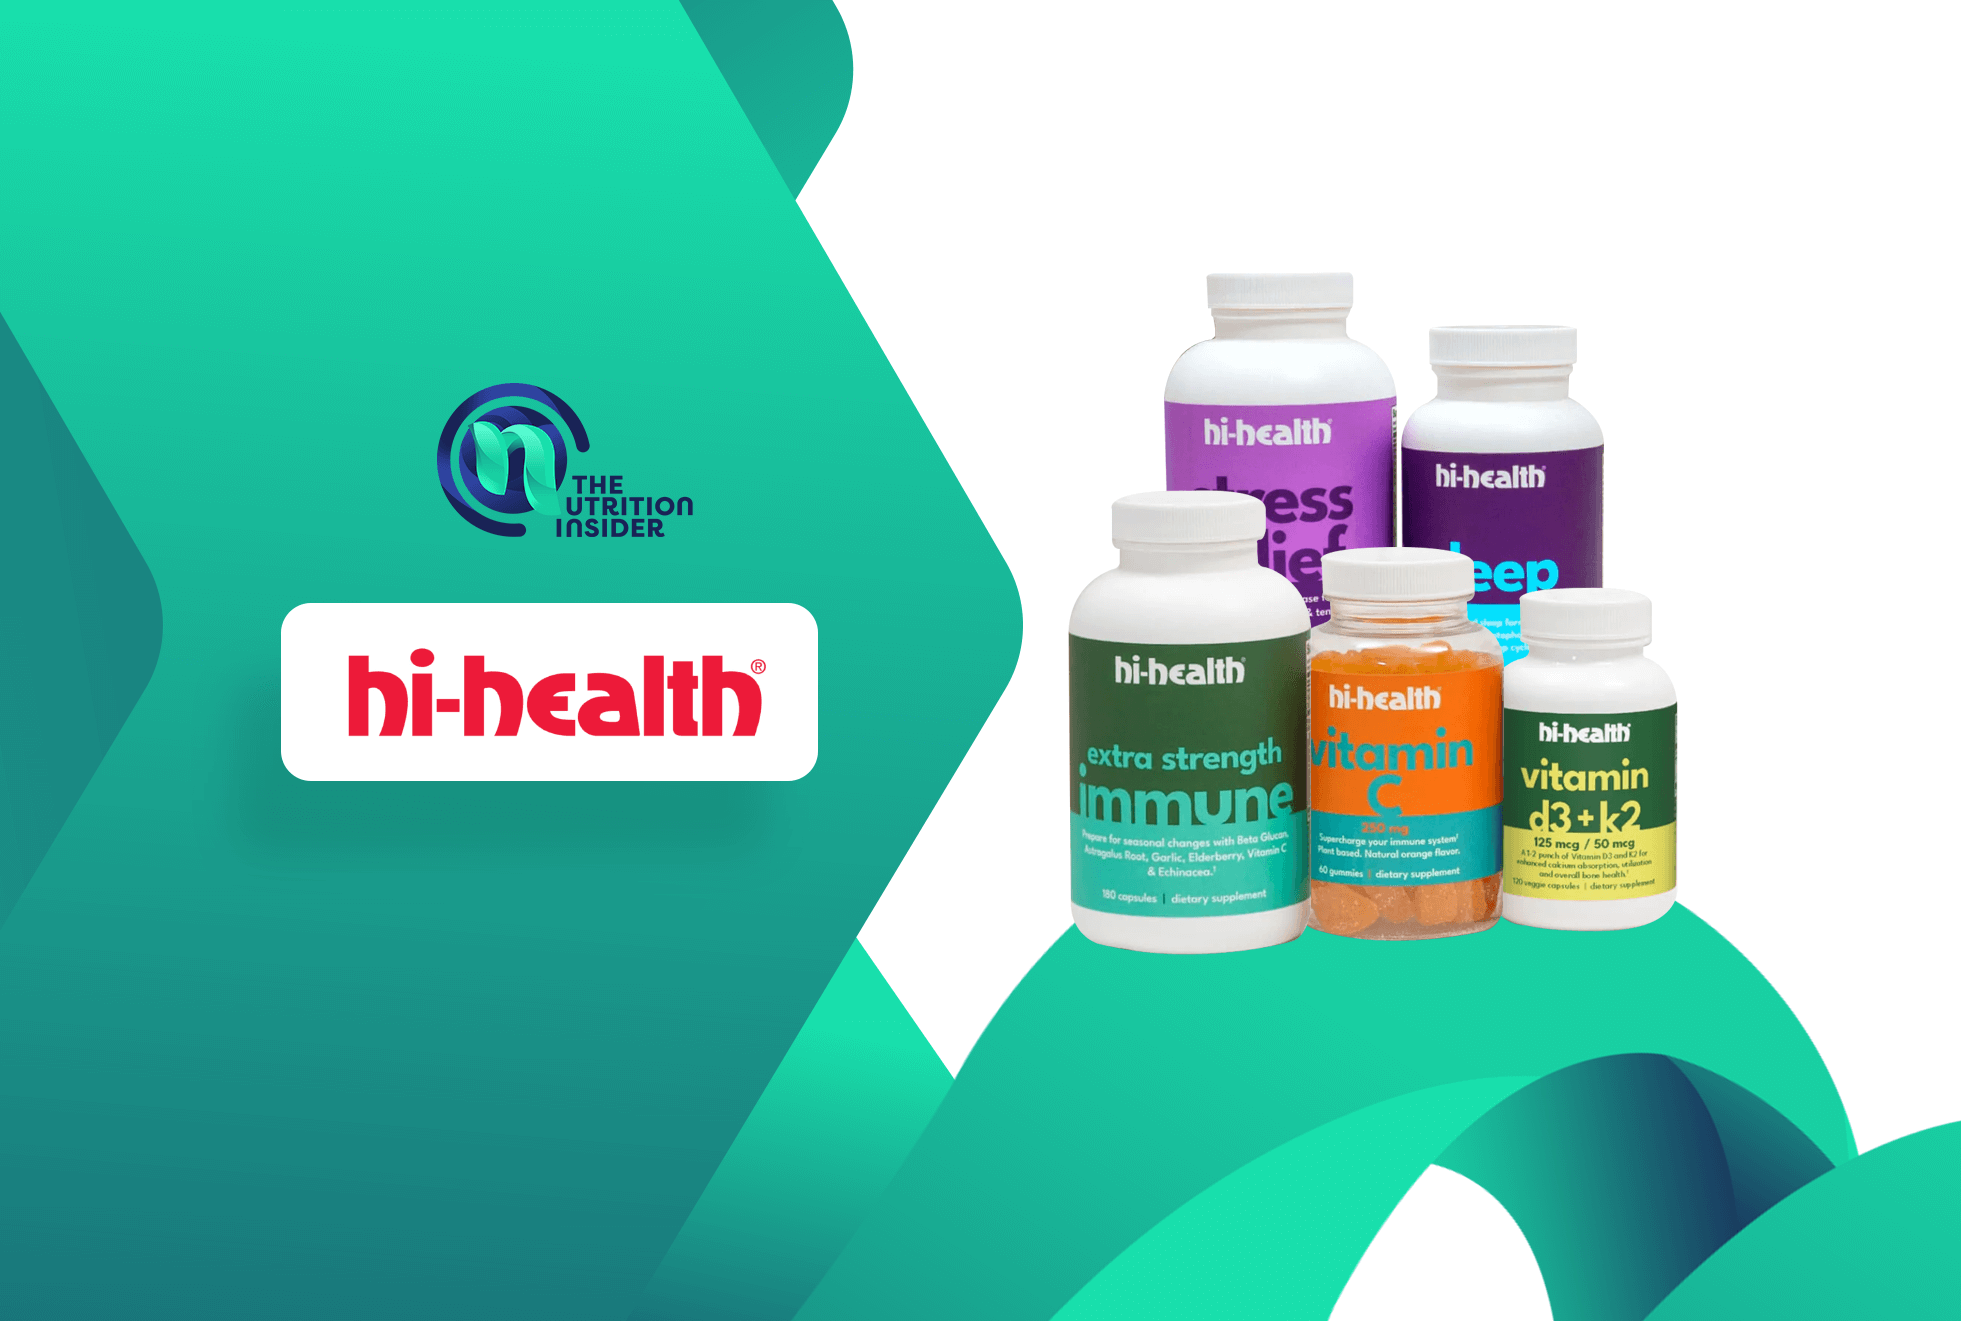 hi-health partnership